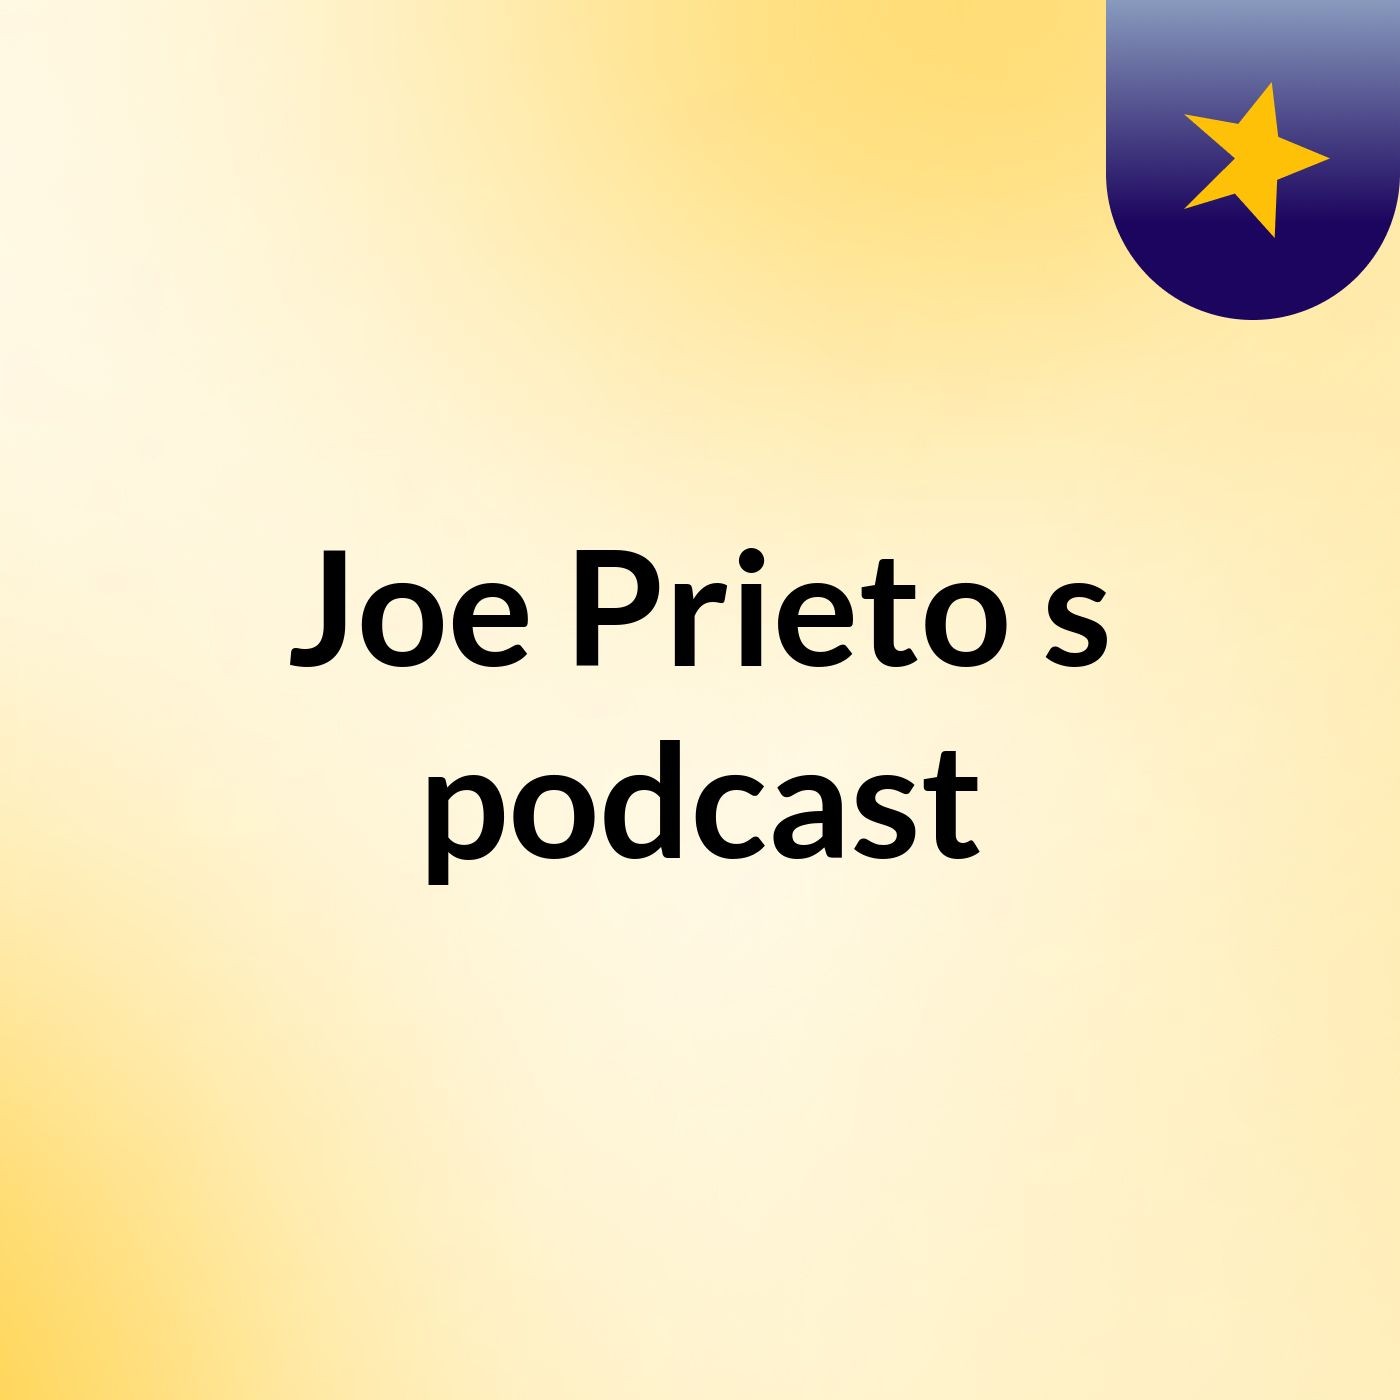 Joe Prieto's podcast